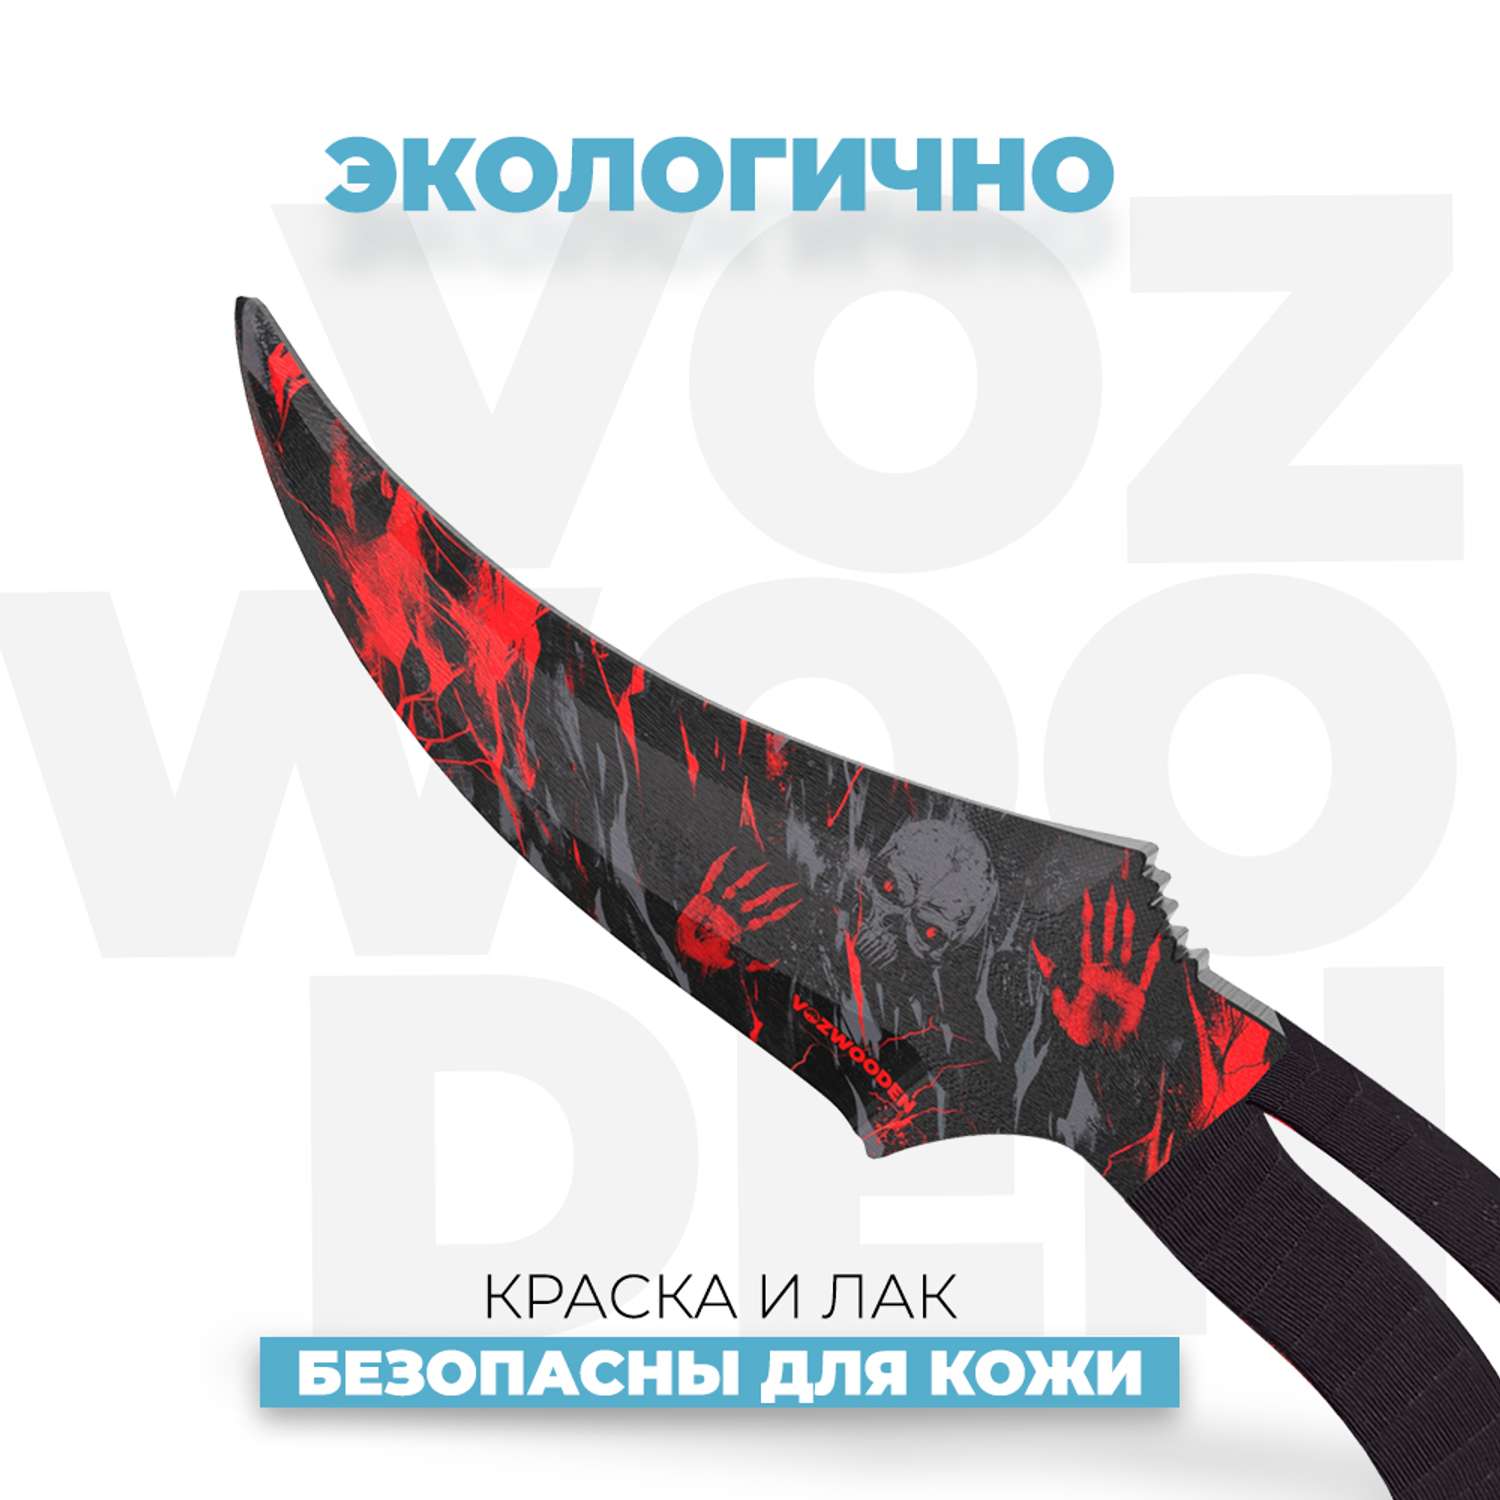 Деревянный нож VozWooden Фанг Хаунт Стандофф 2 - фото 4